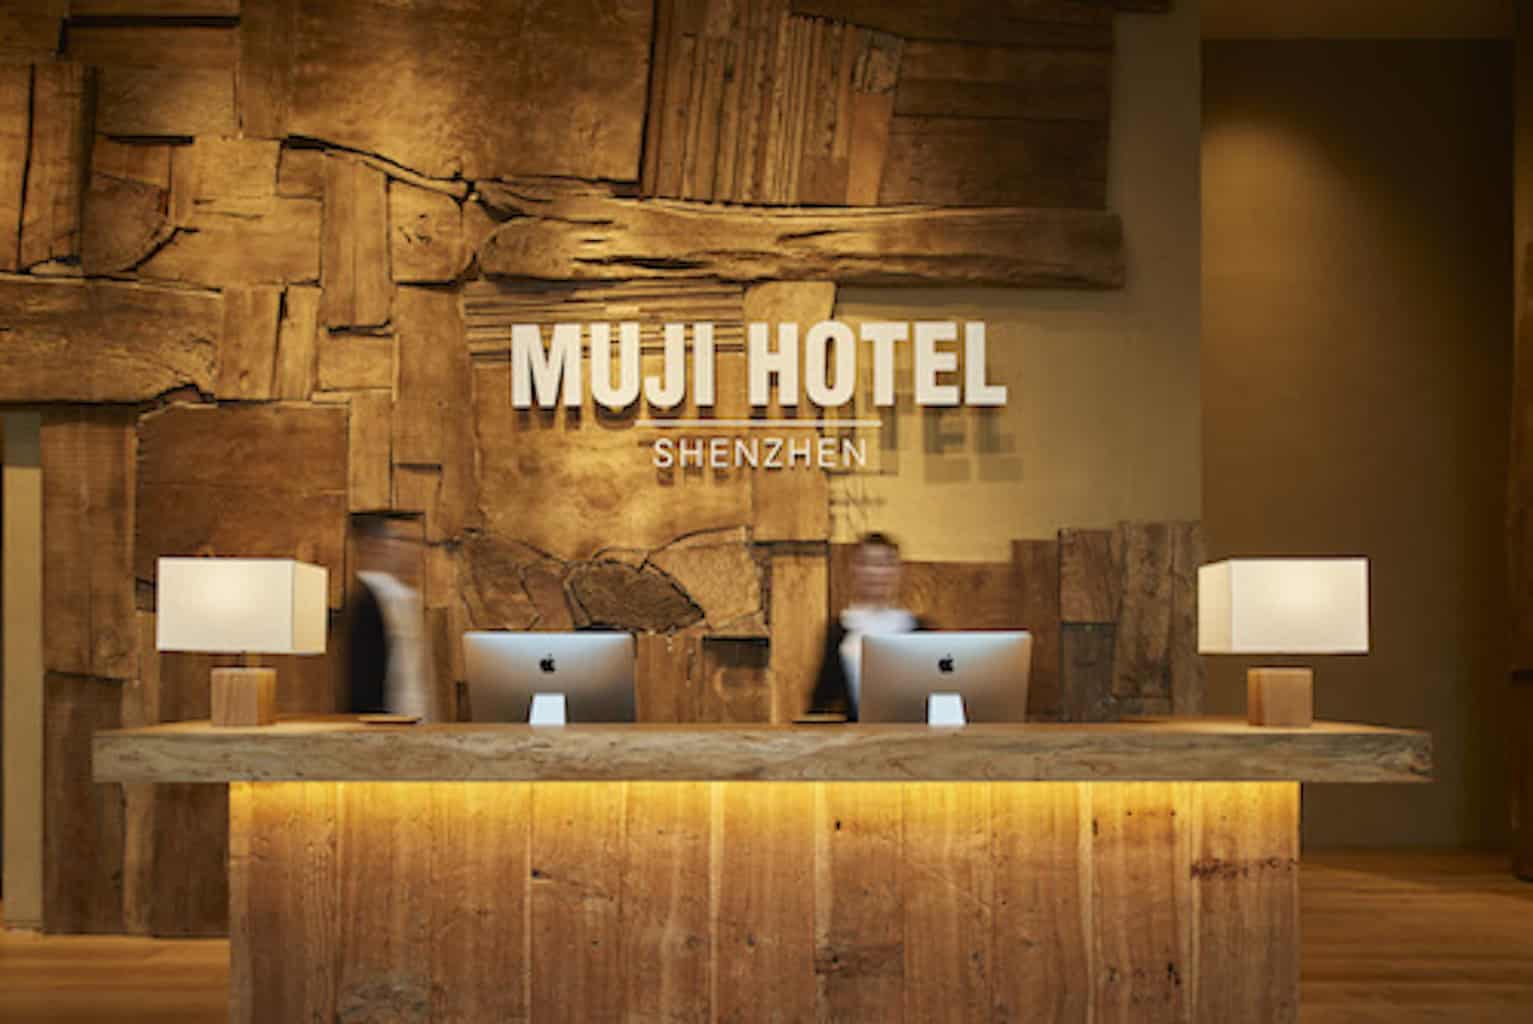 Featured image for “MUJI Hotel Shenzhen”